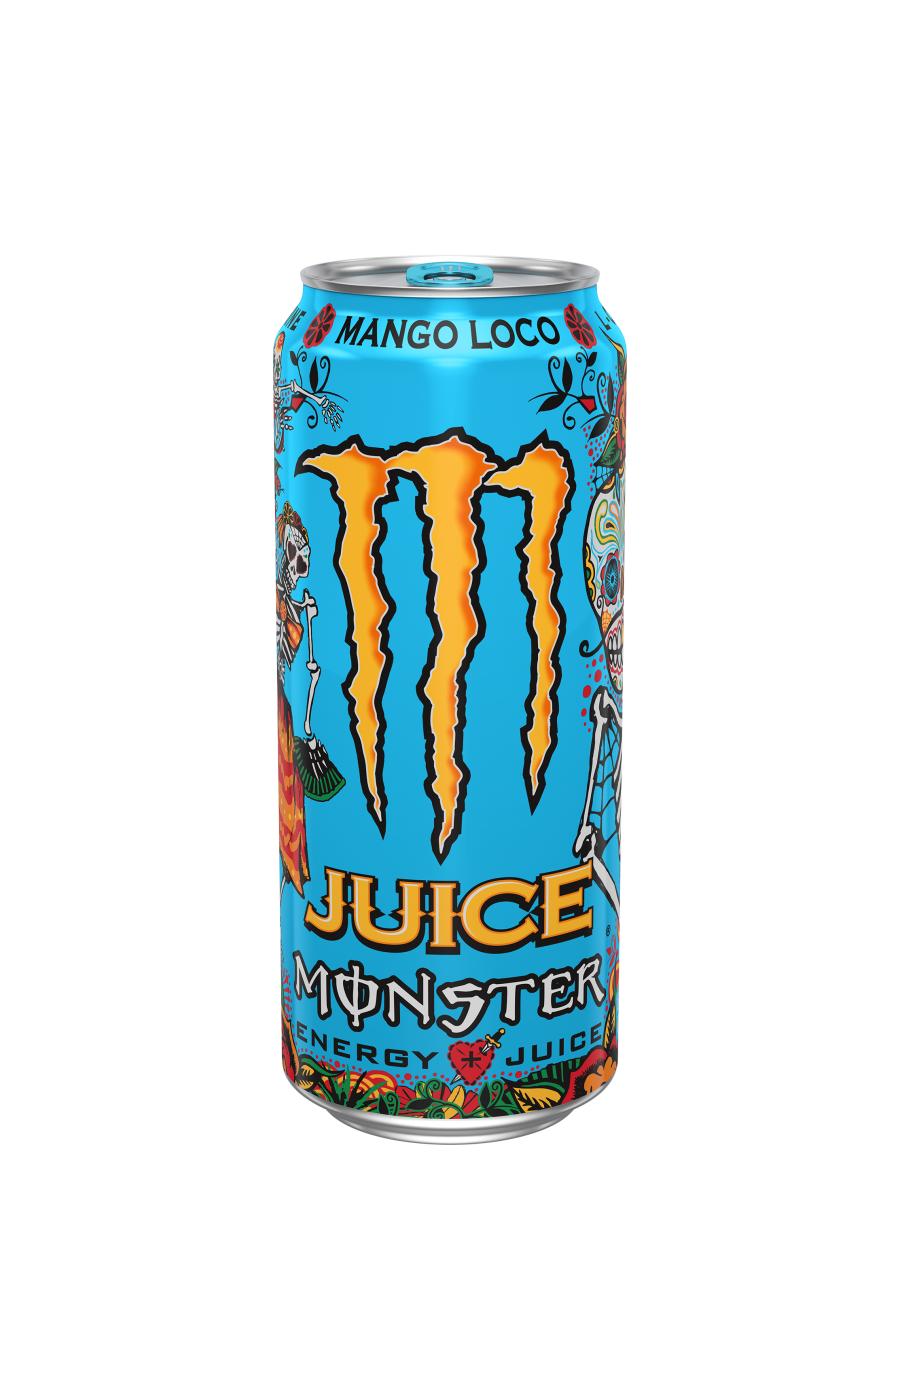 Monster Energy Monster Rehab Lemonade, Tea + Energy - Shop Sports & Energy  Drinks at H-E-B